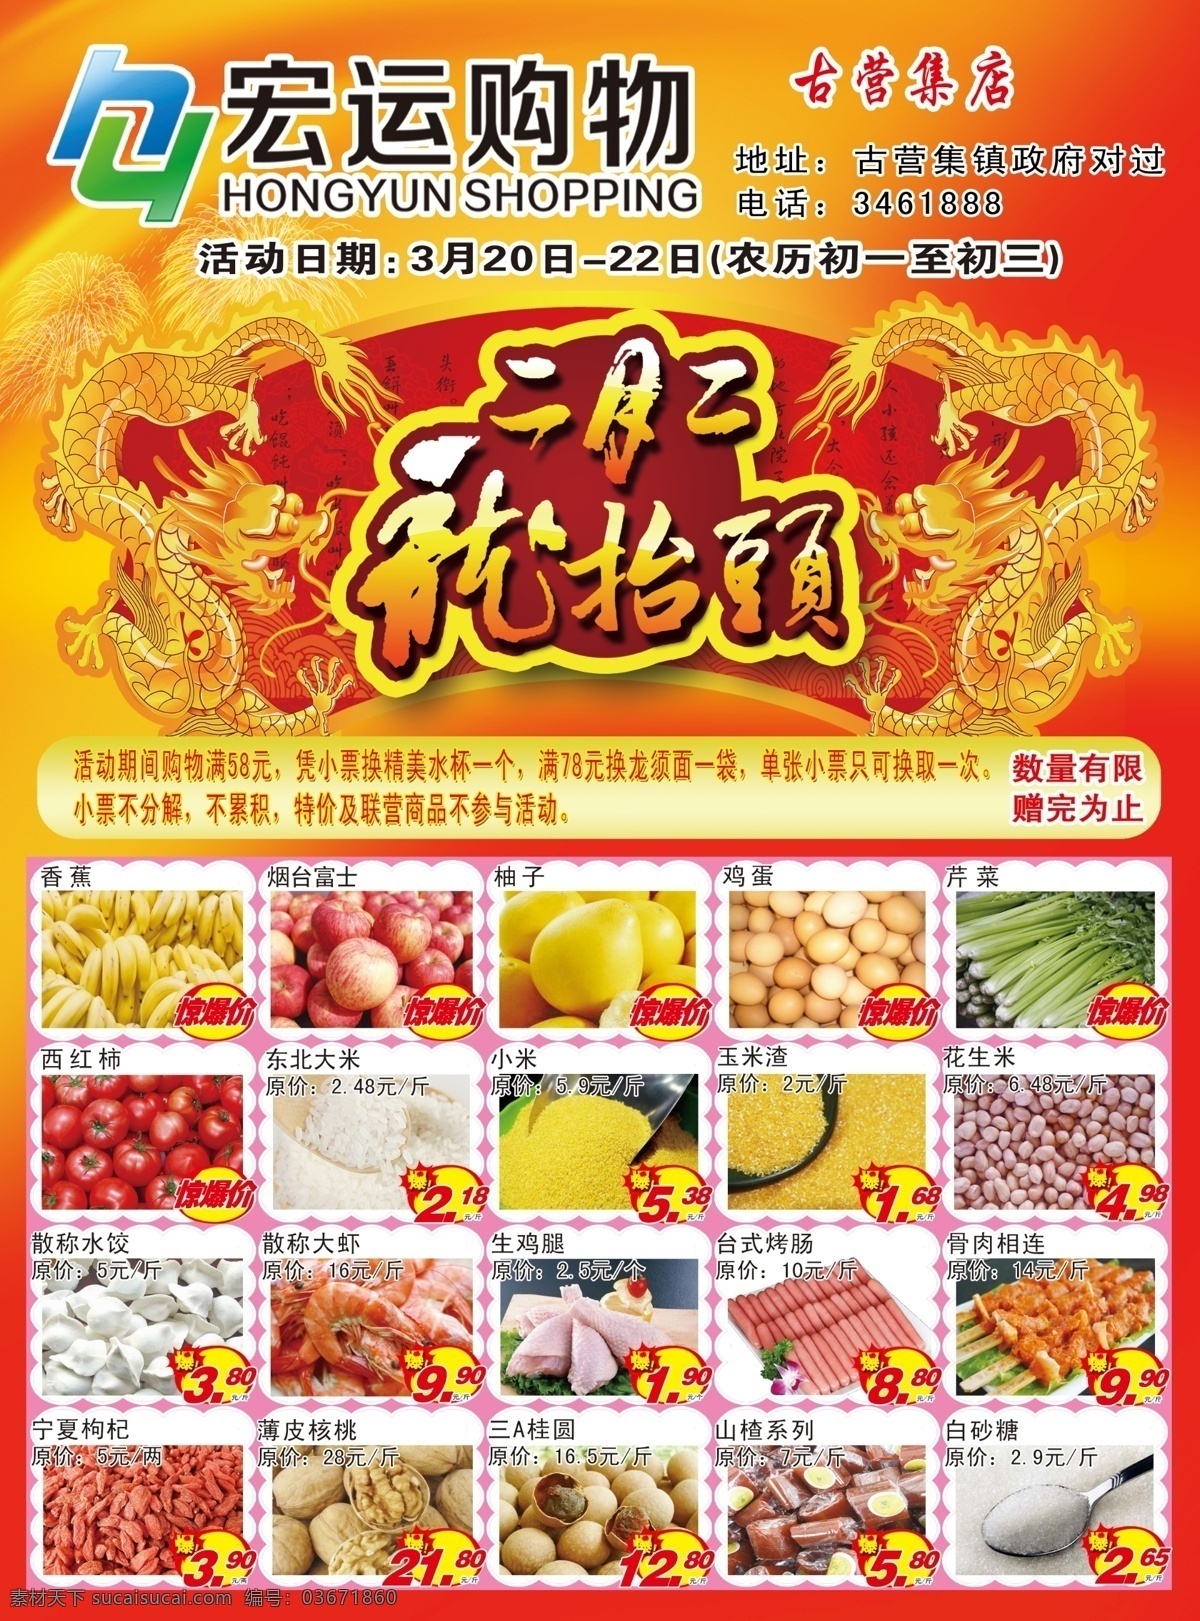 古 营 集 宏运 超市 二月二龙抬头 海报 dm彩页 宣传海报 广告宣传 红色